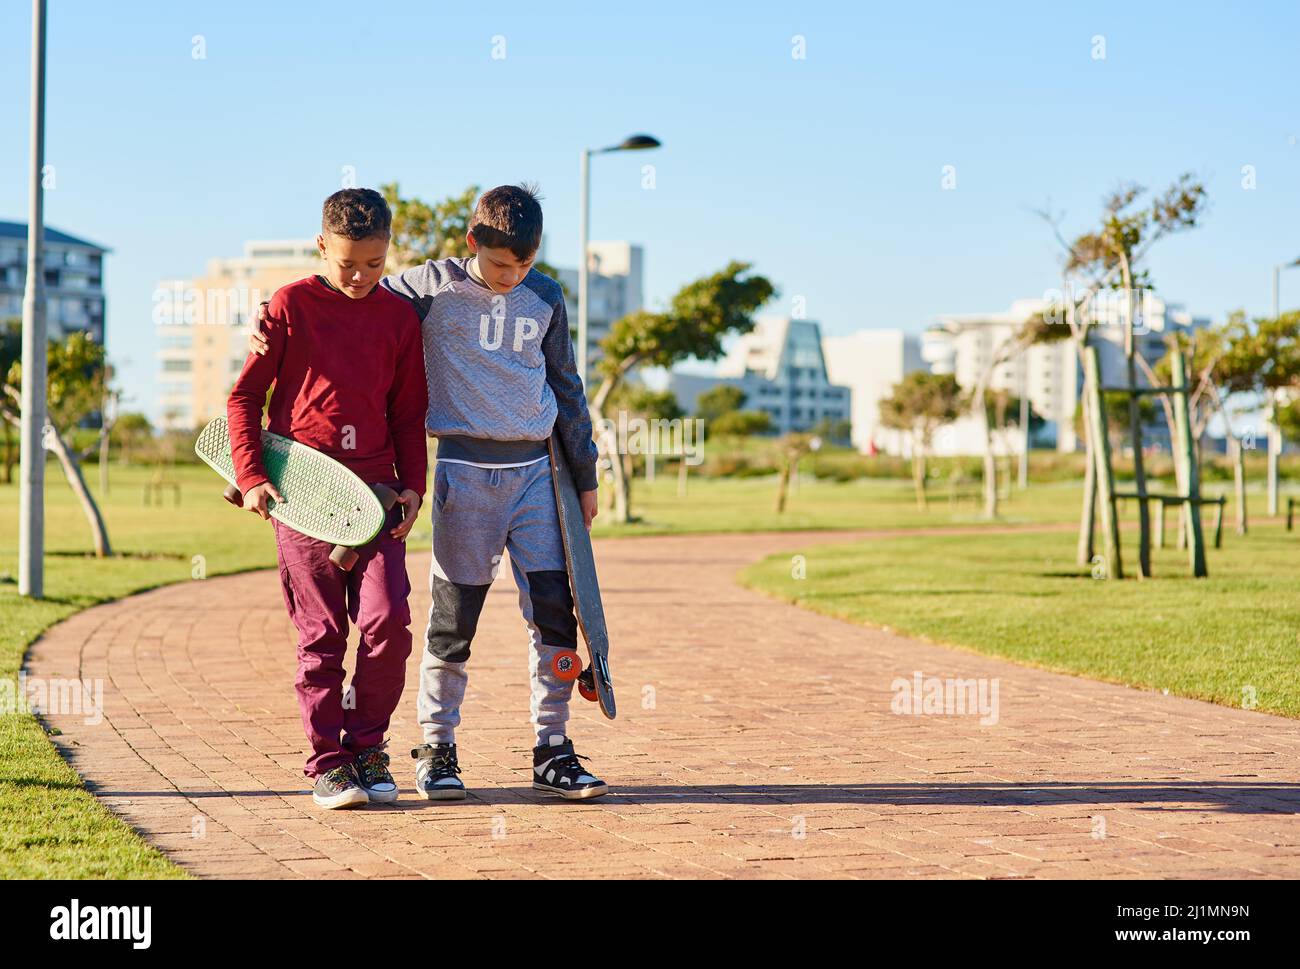 Ils partagent un passe-temps commun. Photo de deux jeunes frères marchant avec leurs planches à roulettes dans le parc. Banque D'Images